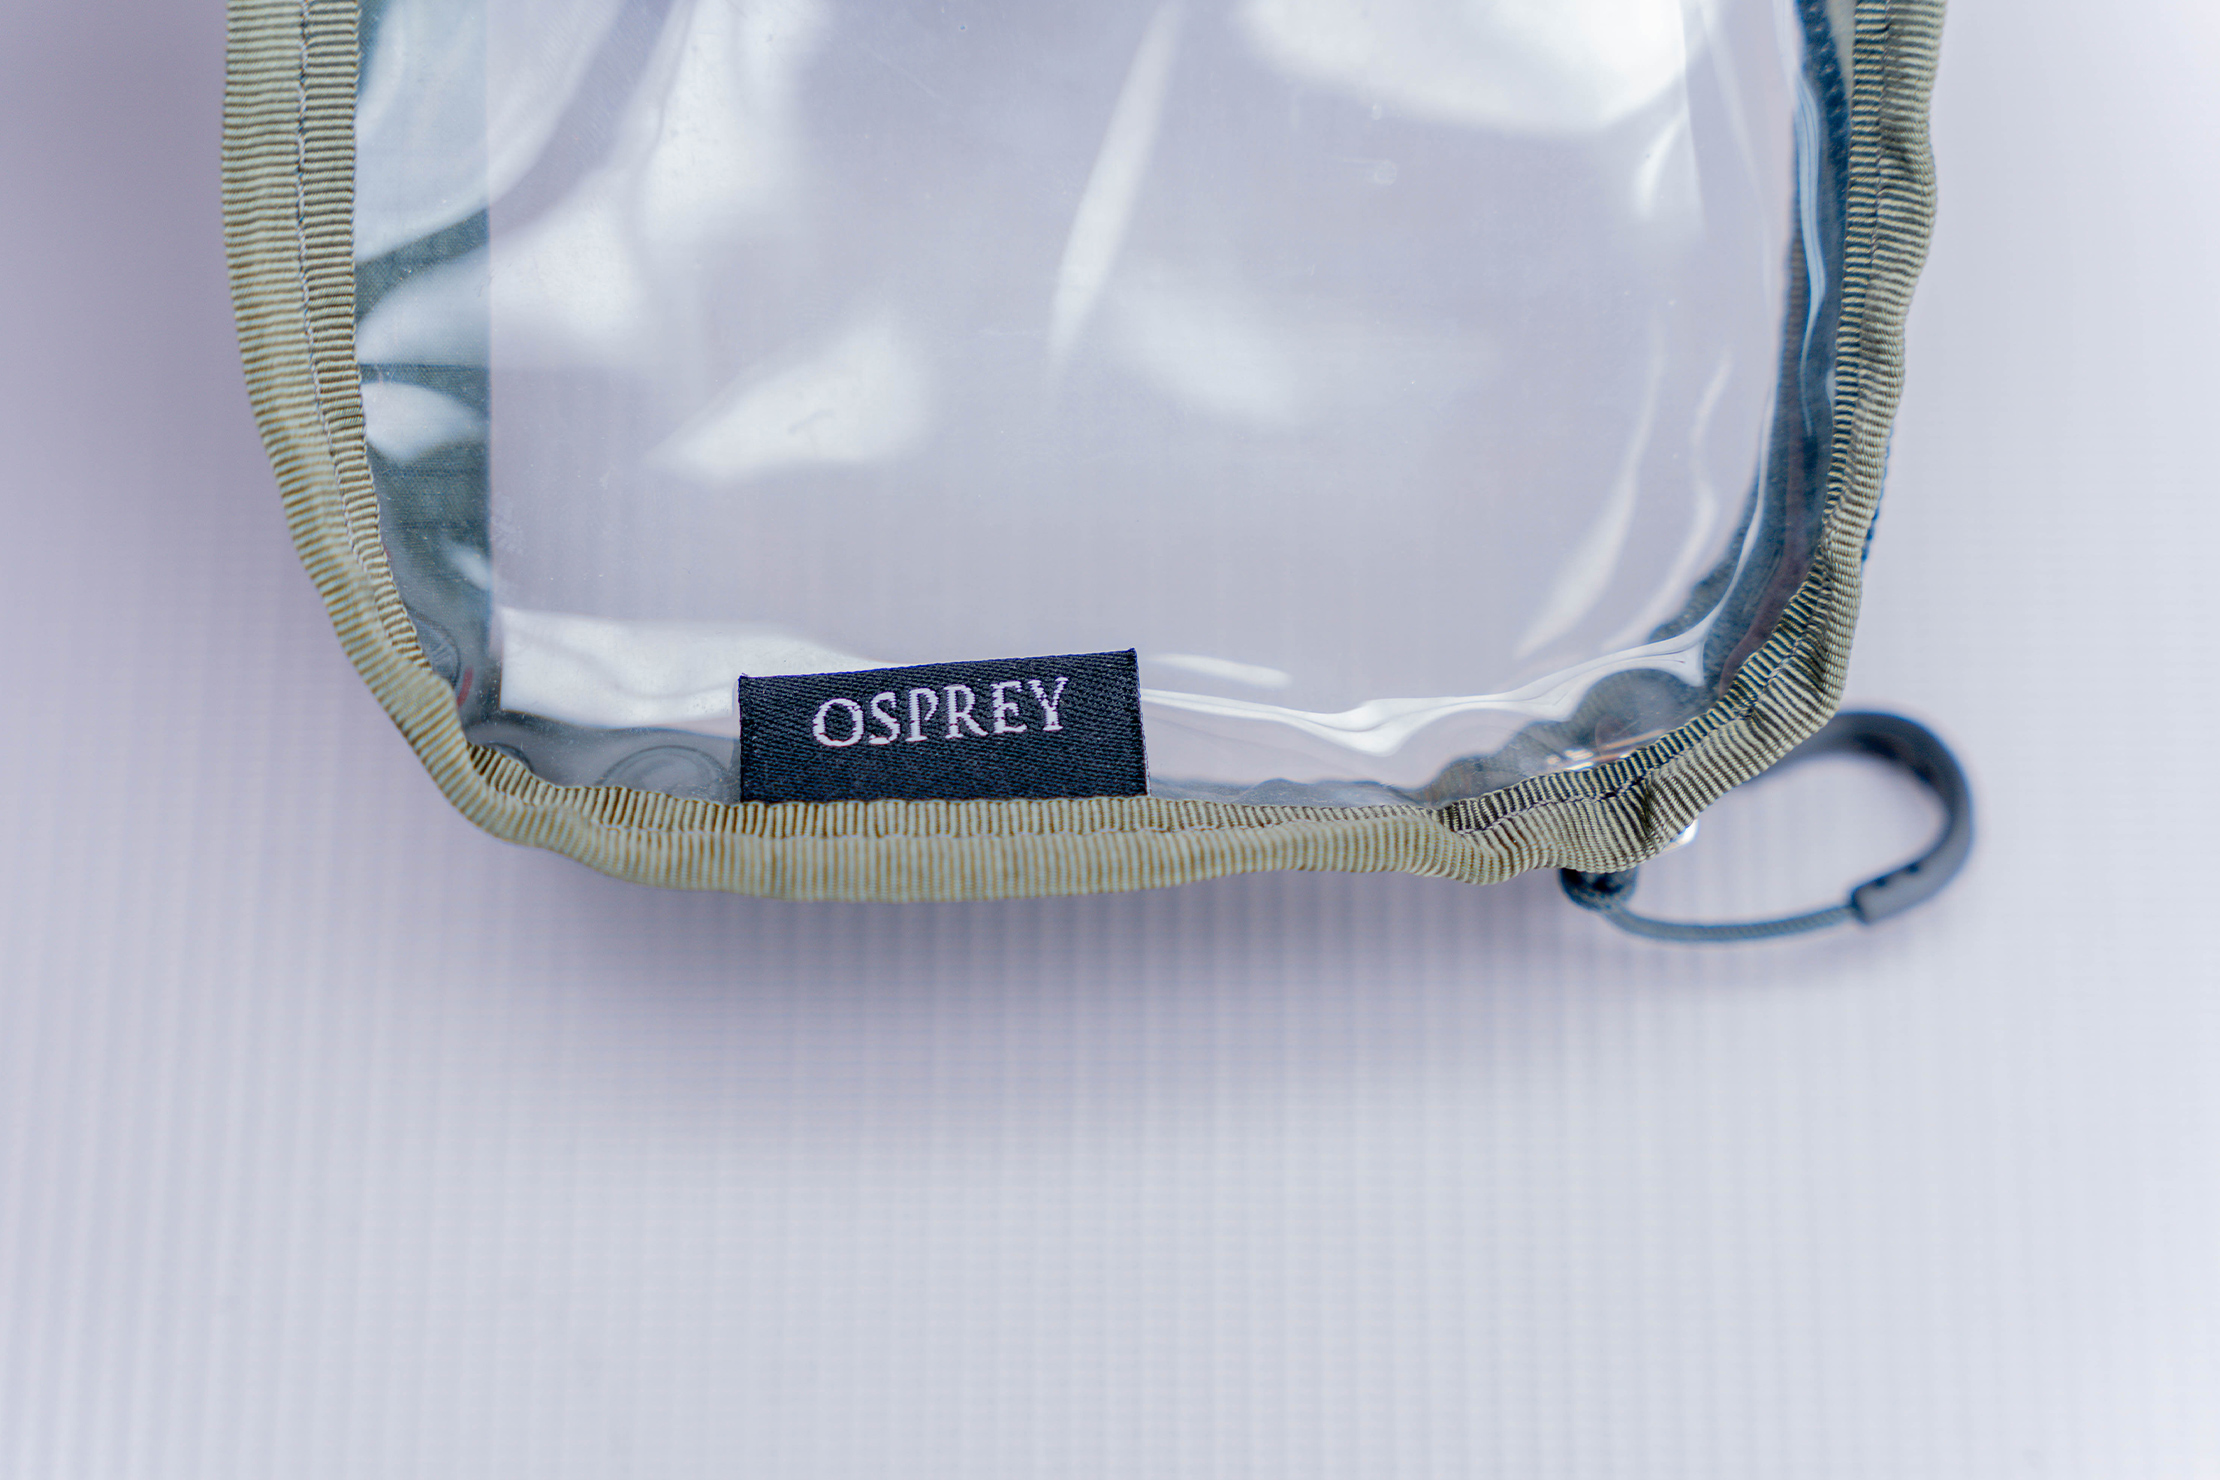 Osprey Ultralight Liquids Pouch Brand